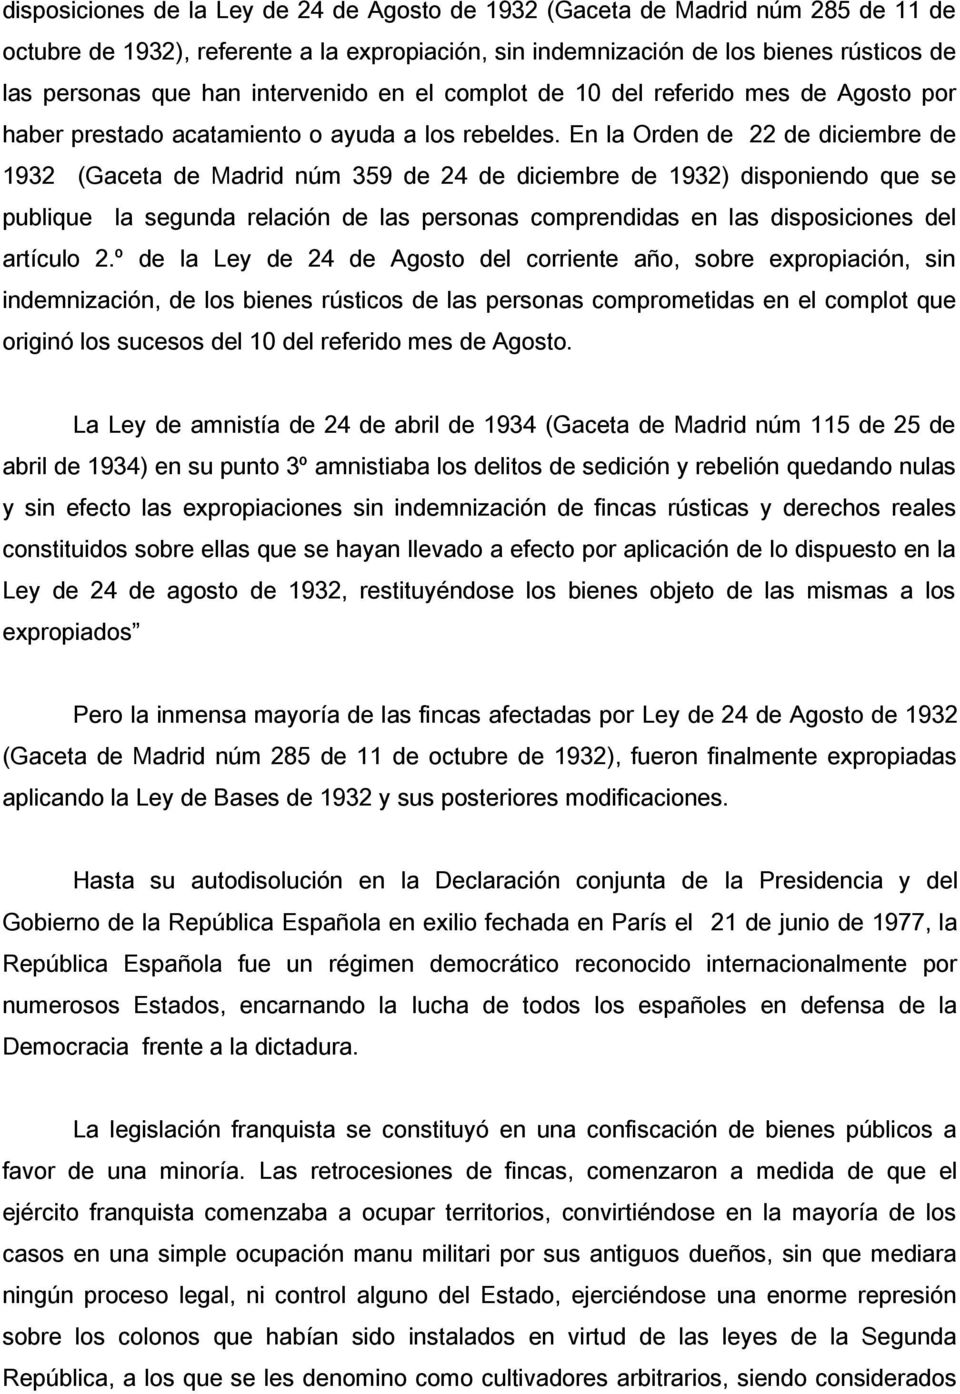 En la Orden de 22 de diciembre de 1932 (Gaceta de Madrid núm 359 de 24 de diciembre de 1932) disponiendo que se publique la segunda relación de las personas comprendidas en las disposiciones del